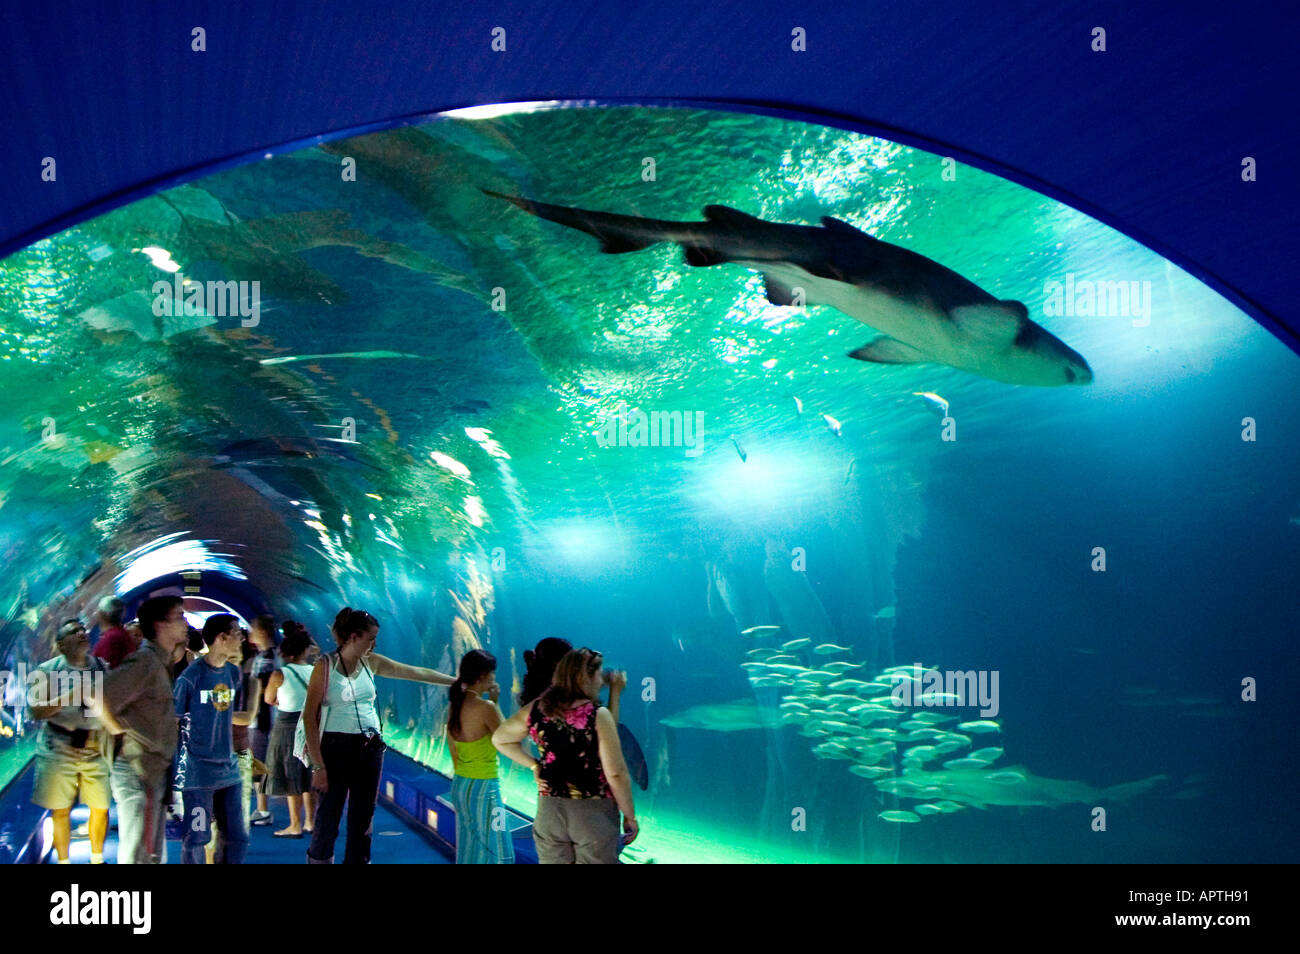 Underwater glass tunnel at the aquarium amusement park L Oceànografic ...